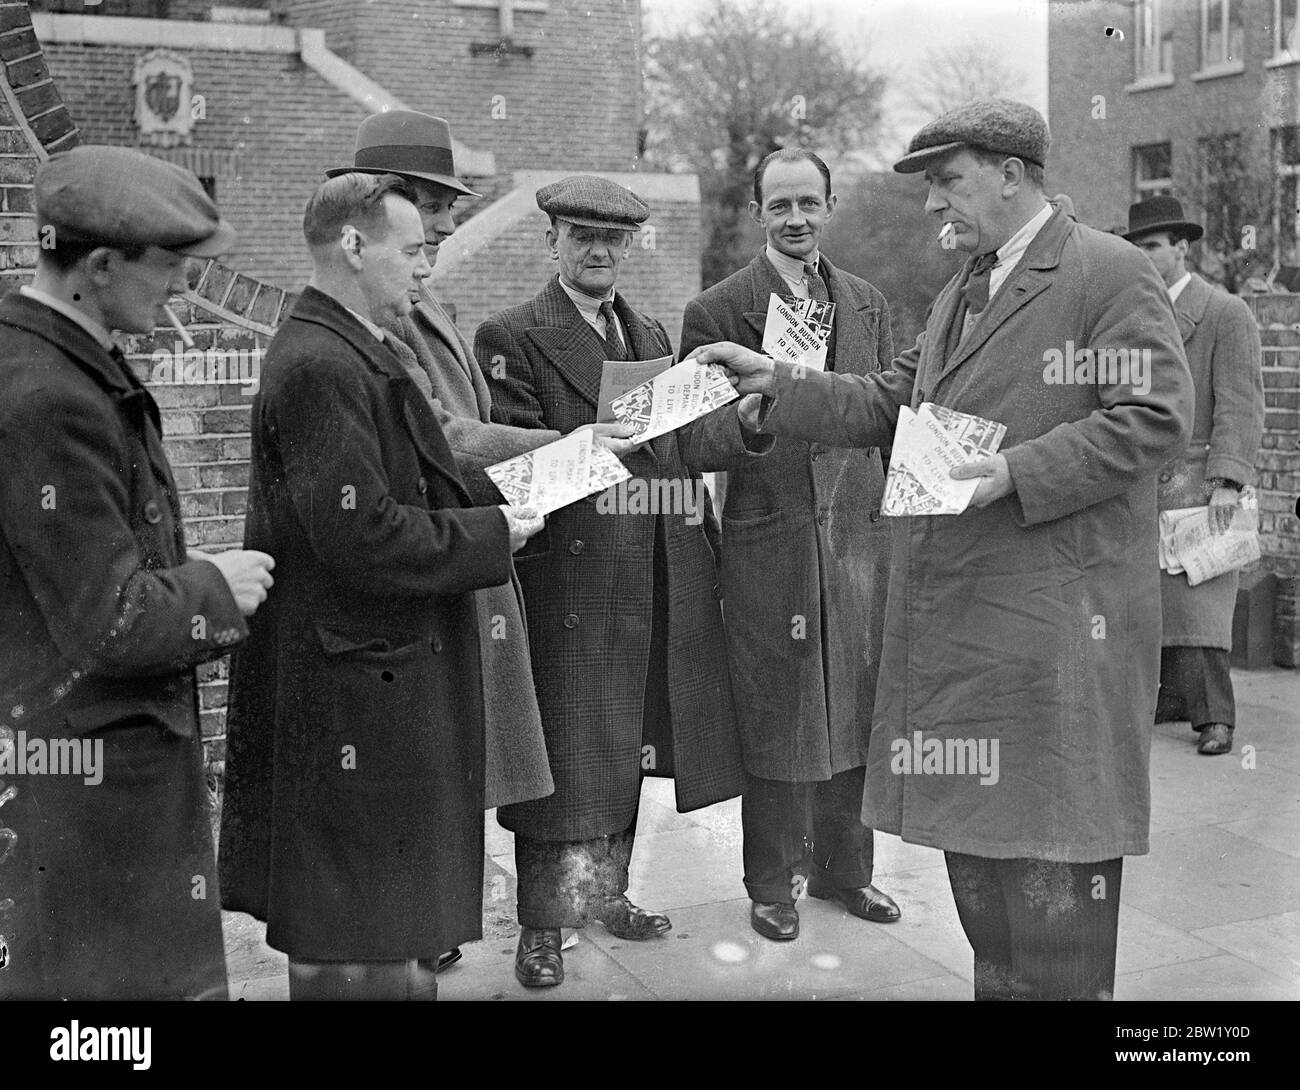 Busmen treffen sich in London, um Streikmaßnahmen zu unterstützen. In der Woodbury Hall, Green Lanes, Stoke Newington, fand eine Versammlung von Busdelegierten der Transport and General Workers Union statt, bei der erwartet wurde, dass die endgültige Zustimmung zu den Streikmaßnahmen nach dem vollständigen Scheitern der Verhandlungen, die die ganze Woche über geführt wurden, gegeben wird. Das Foto zeigt, wie die Busleute Flugblätter verteilten, die den Standpunkt der Busmänner während der Sitzung vorbringen. 30. April 1937 Stockfoto